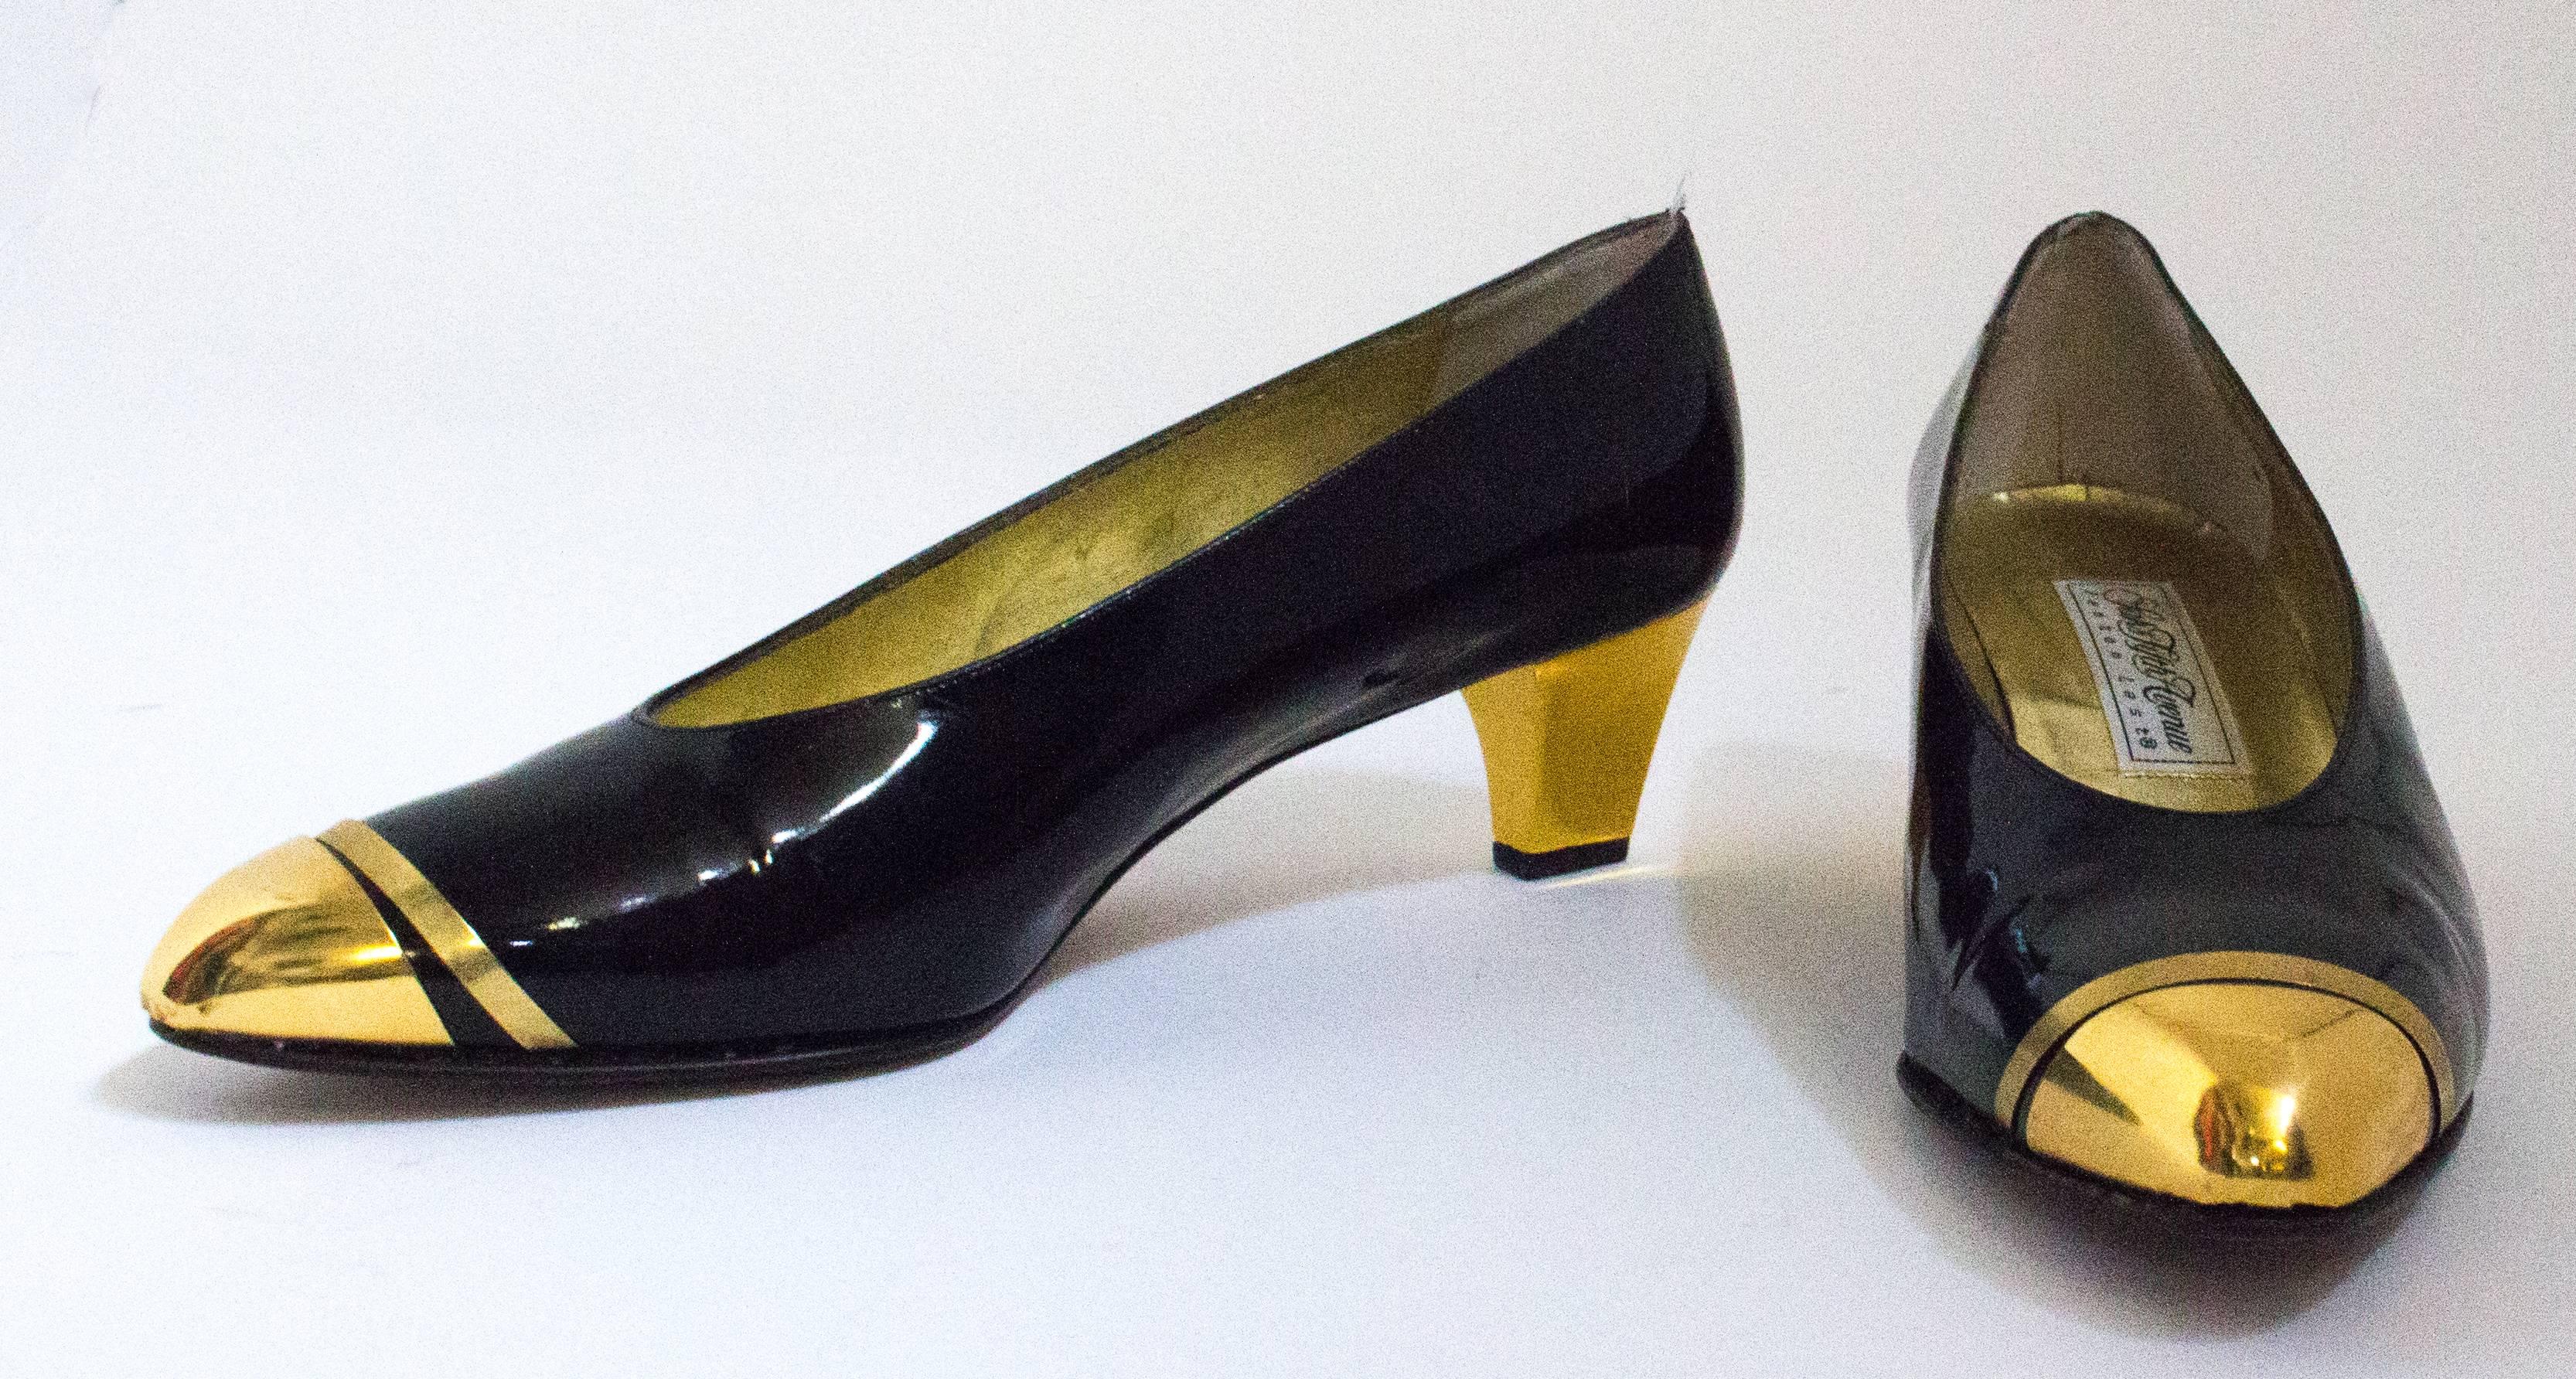 escarpins des années 80 en cuir verni noir avec cpas d'orteil et couvre-talon en métal doré. Semelles en cuir. Fabriquées en Italie. 

Mesures :

Semelle intérieure : 9 3/4 pouces
Paume du pied : 3 pouces 
Talon : 2 1/2 pouces 